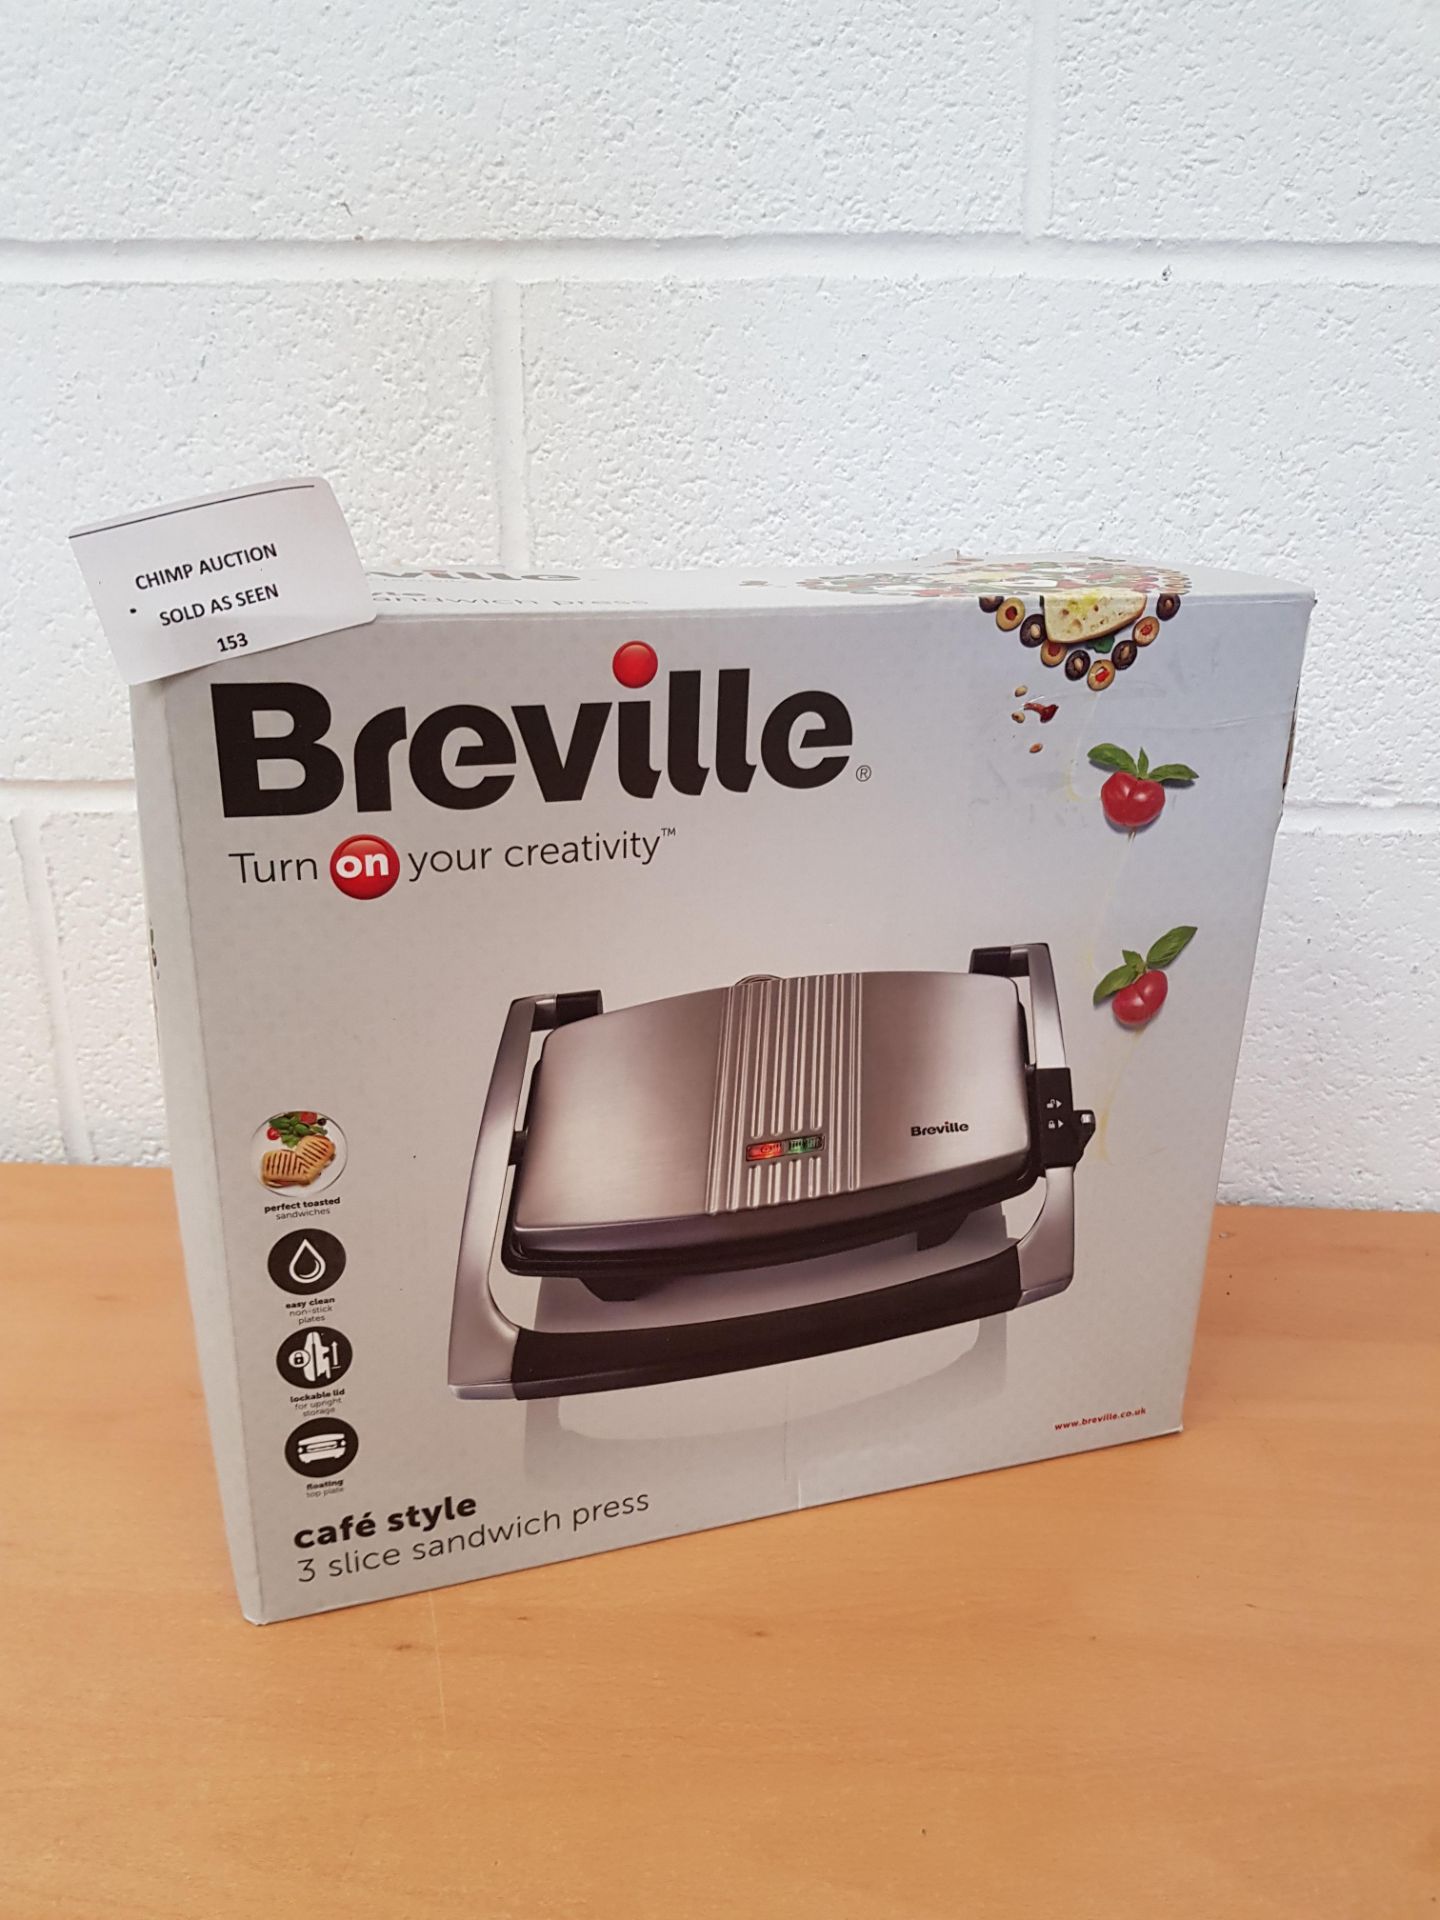 Breville Café Style 3 slice Sandwich press